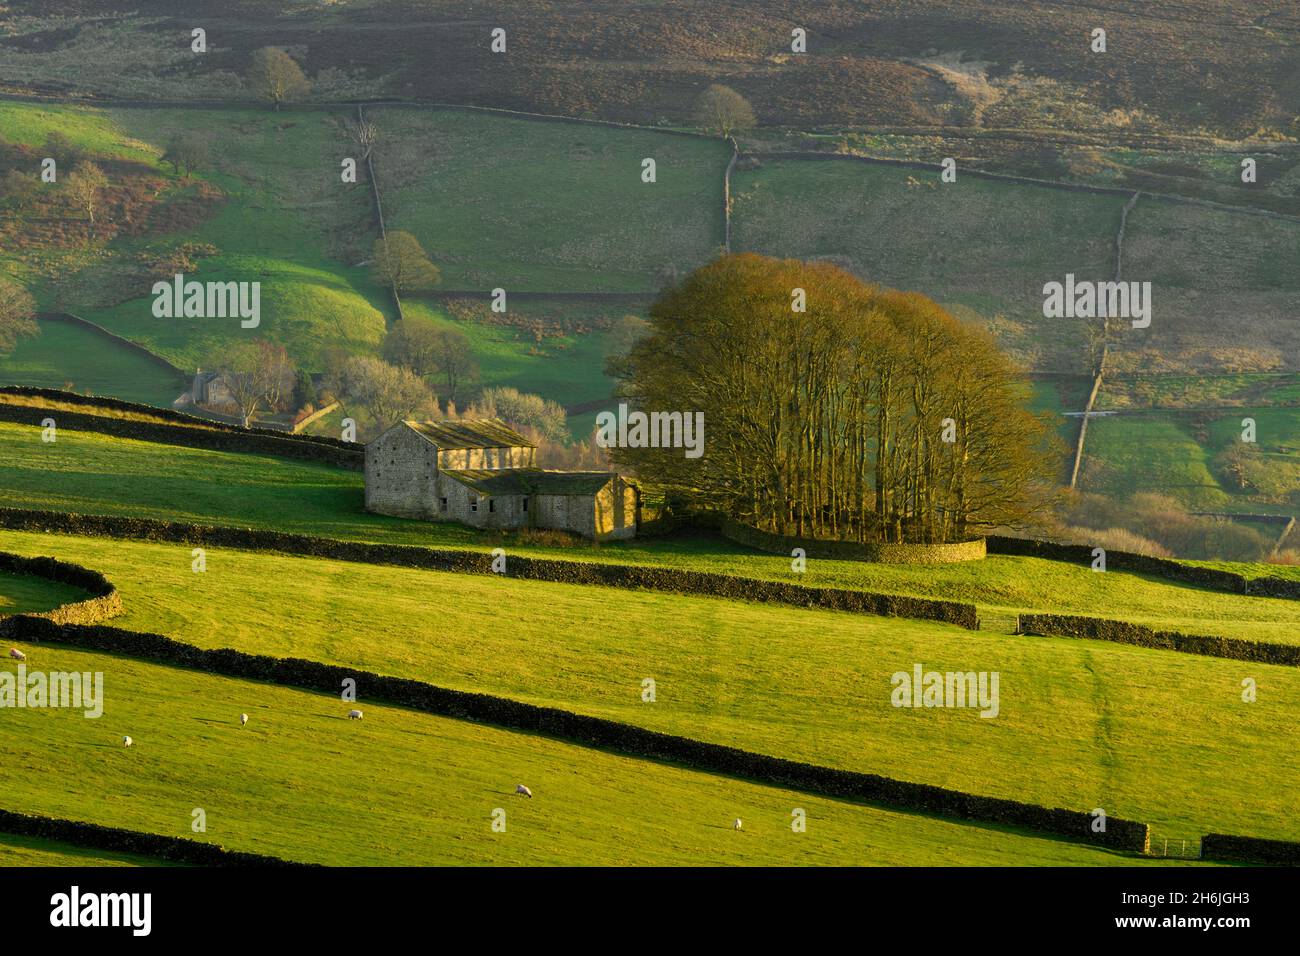 Belle campagne vallonnée pittoresque (colline ensoleillée et collines, groupe d'arbres au sommet d'une colline, bâtiments agricoles isolés, hautes terres) - Yorkshire Dales, Angleterre, Royaume-Uni. Banque D'Images